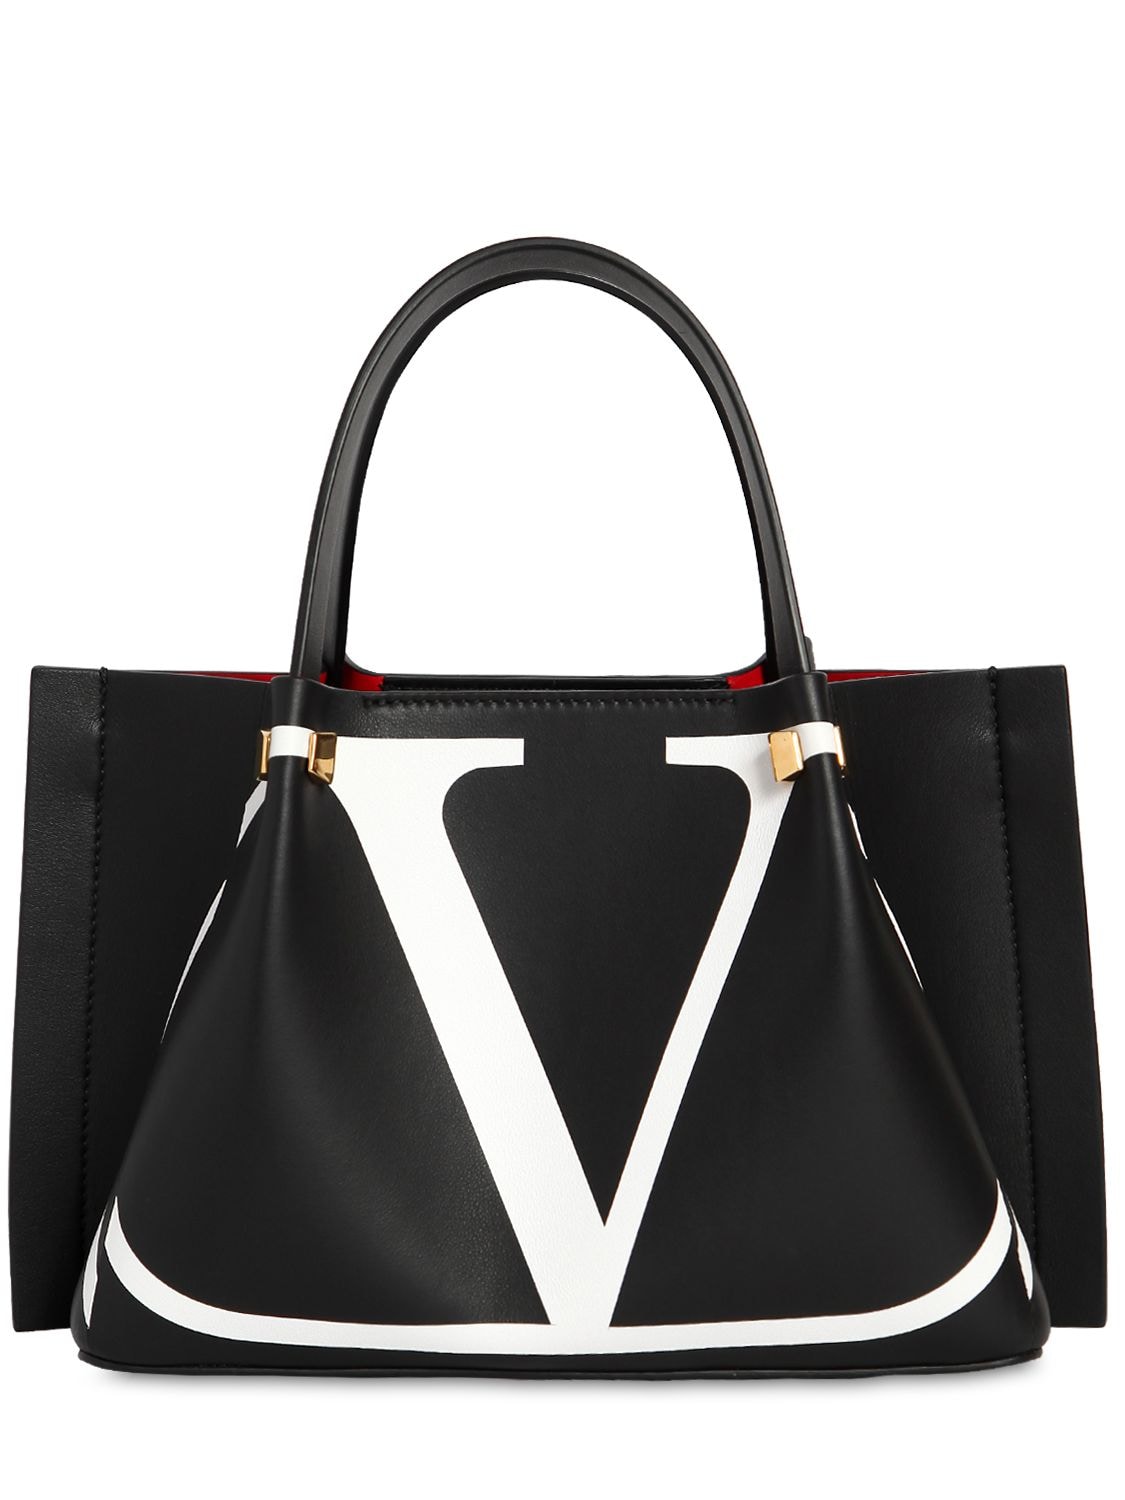 Valentino Garavani Small Logo Escape Leather Tote Bag In Black/white